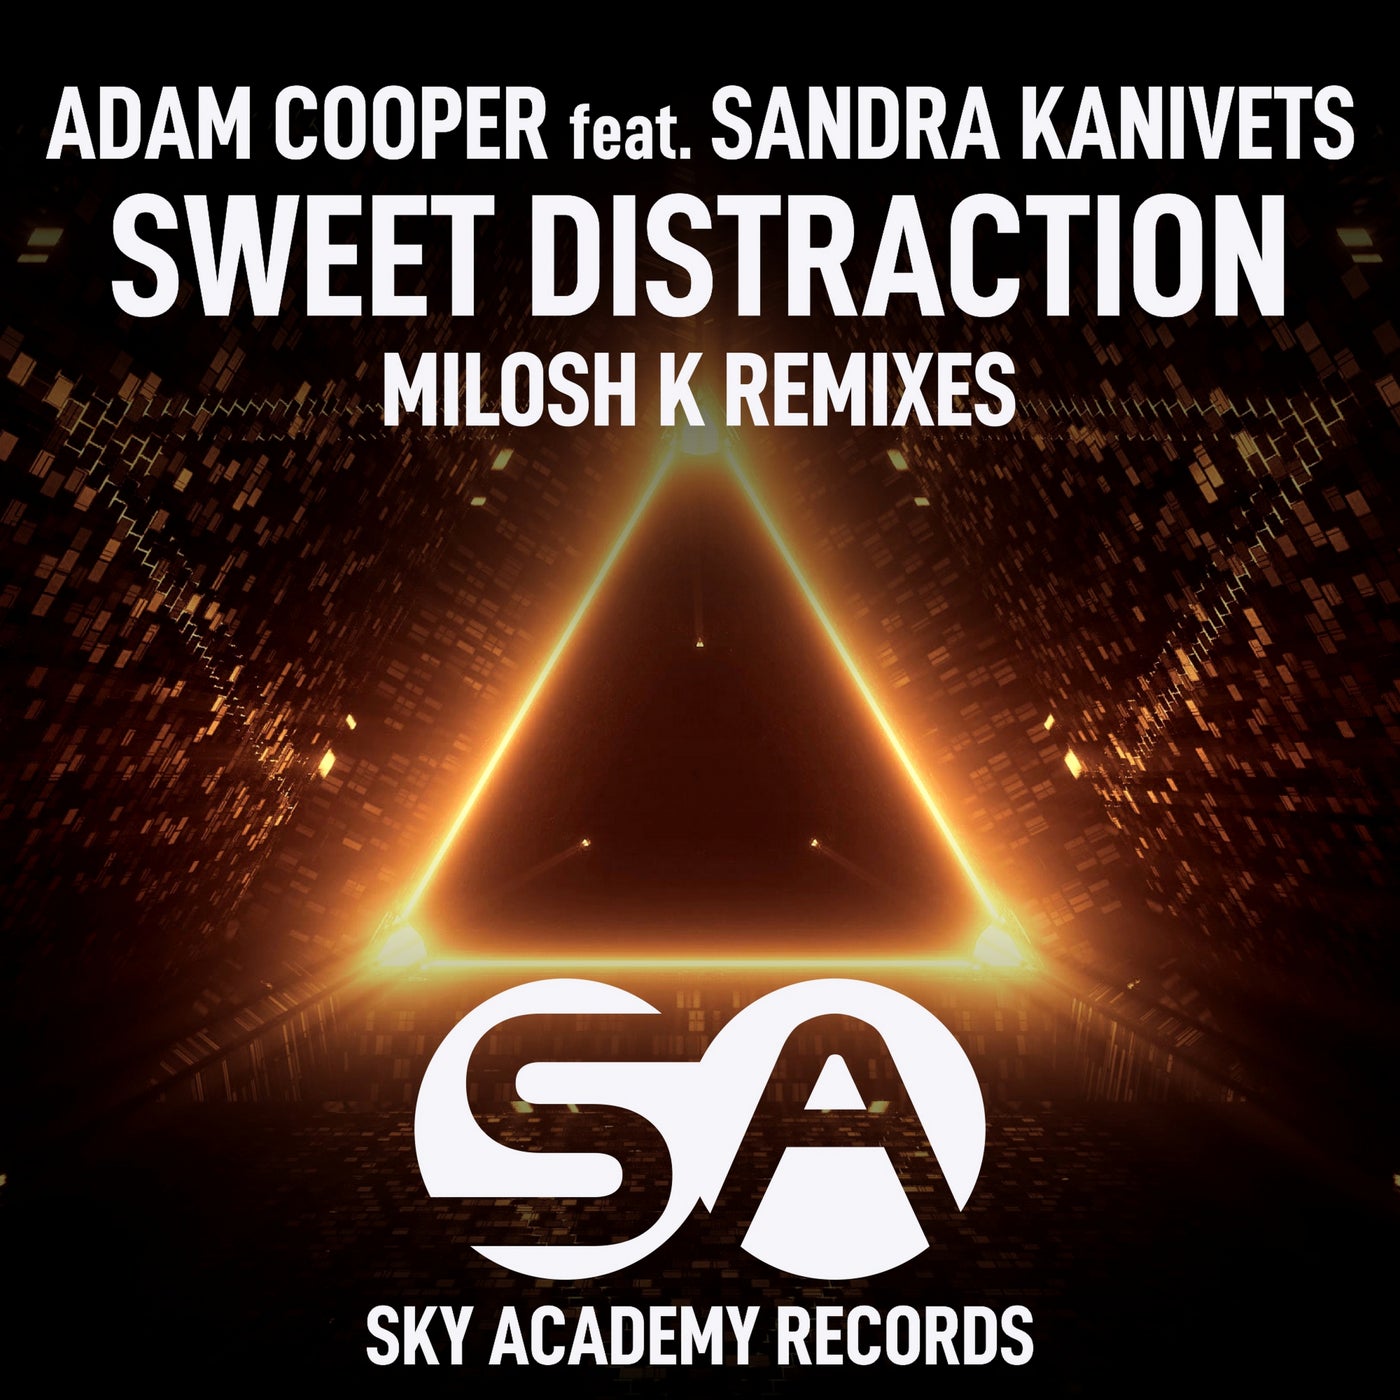 Sweet Distraction (Milosh K Remixes)